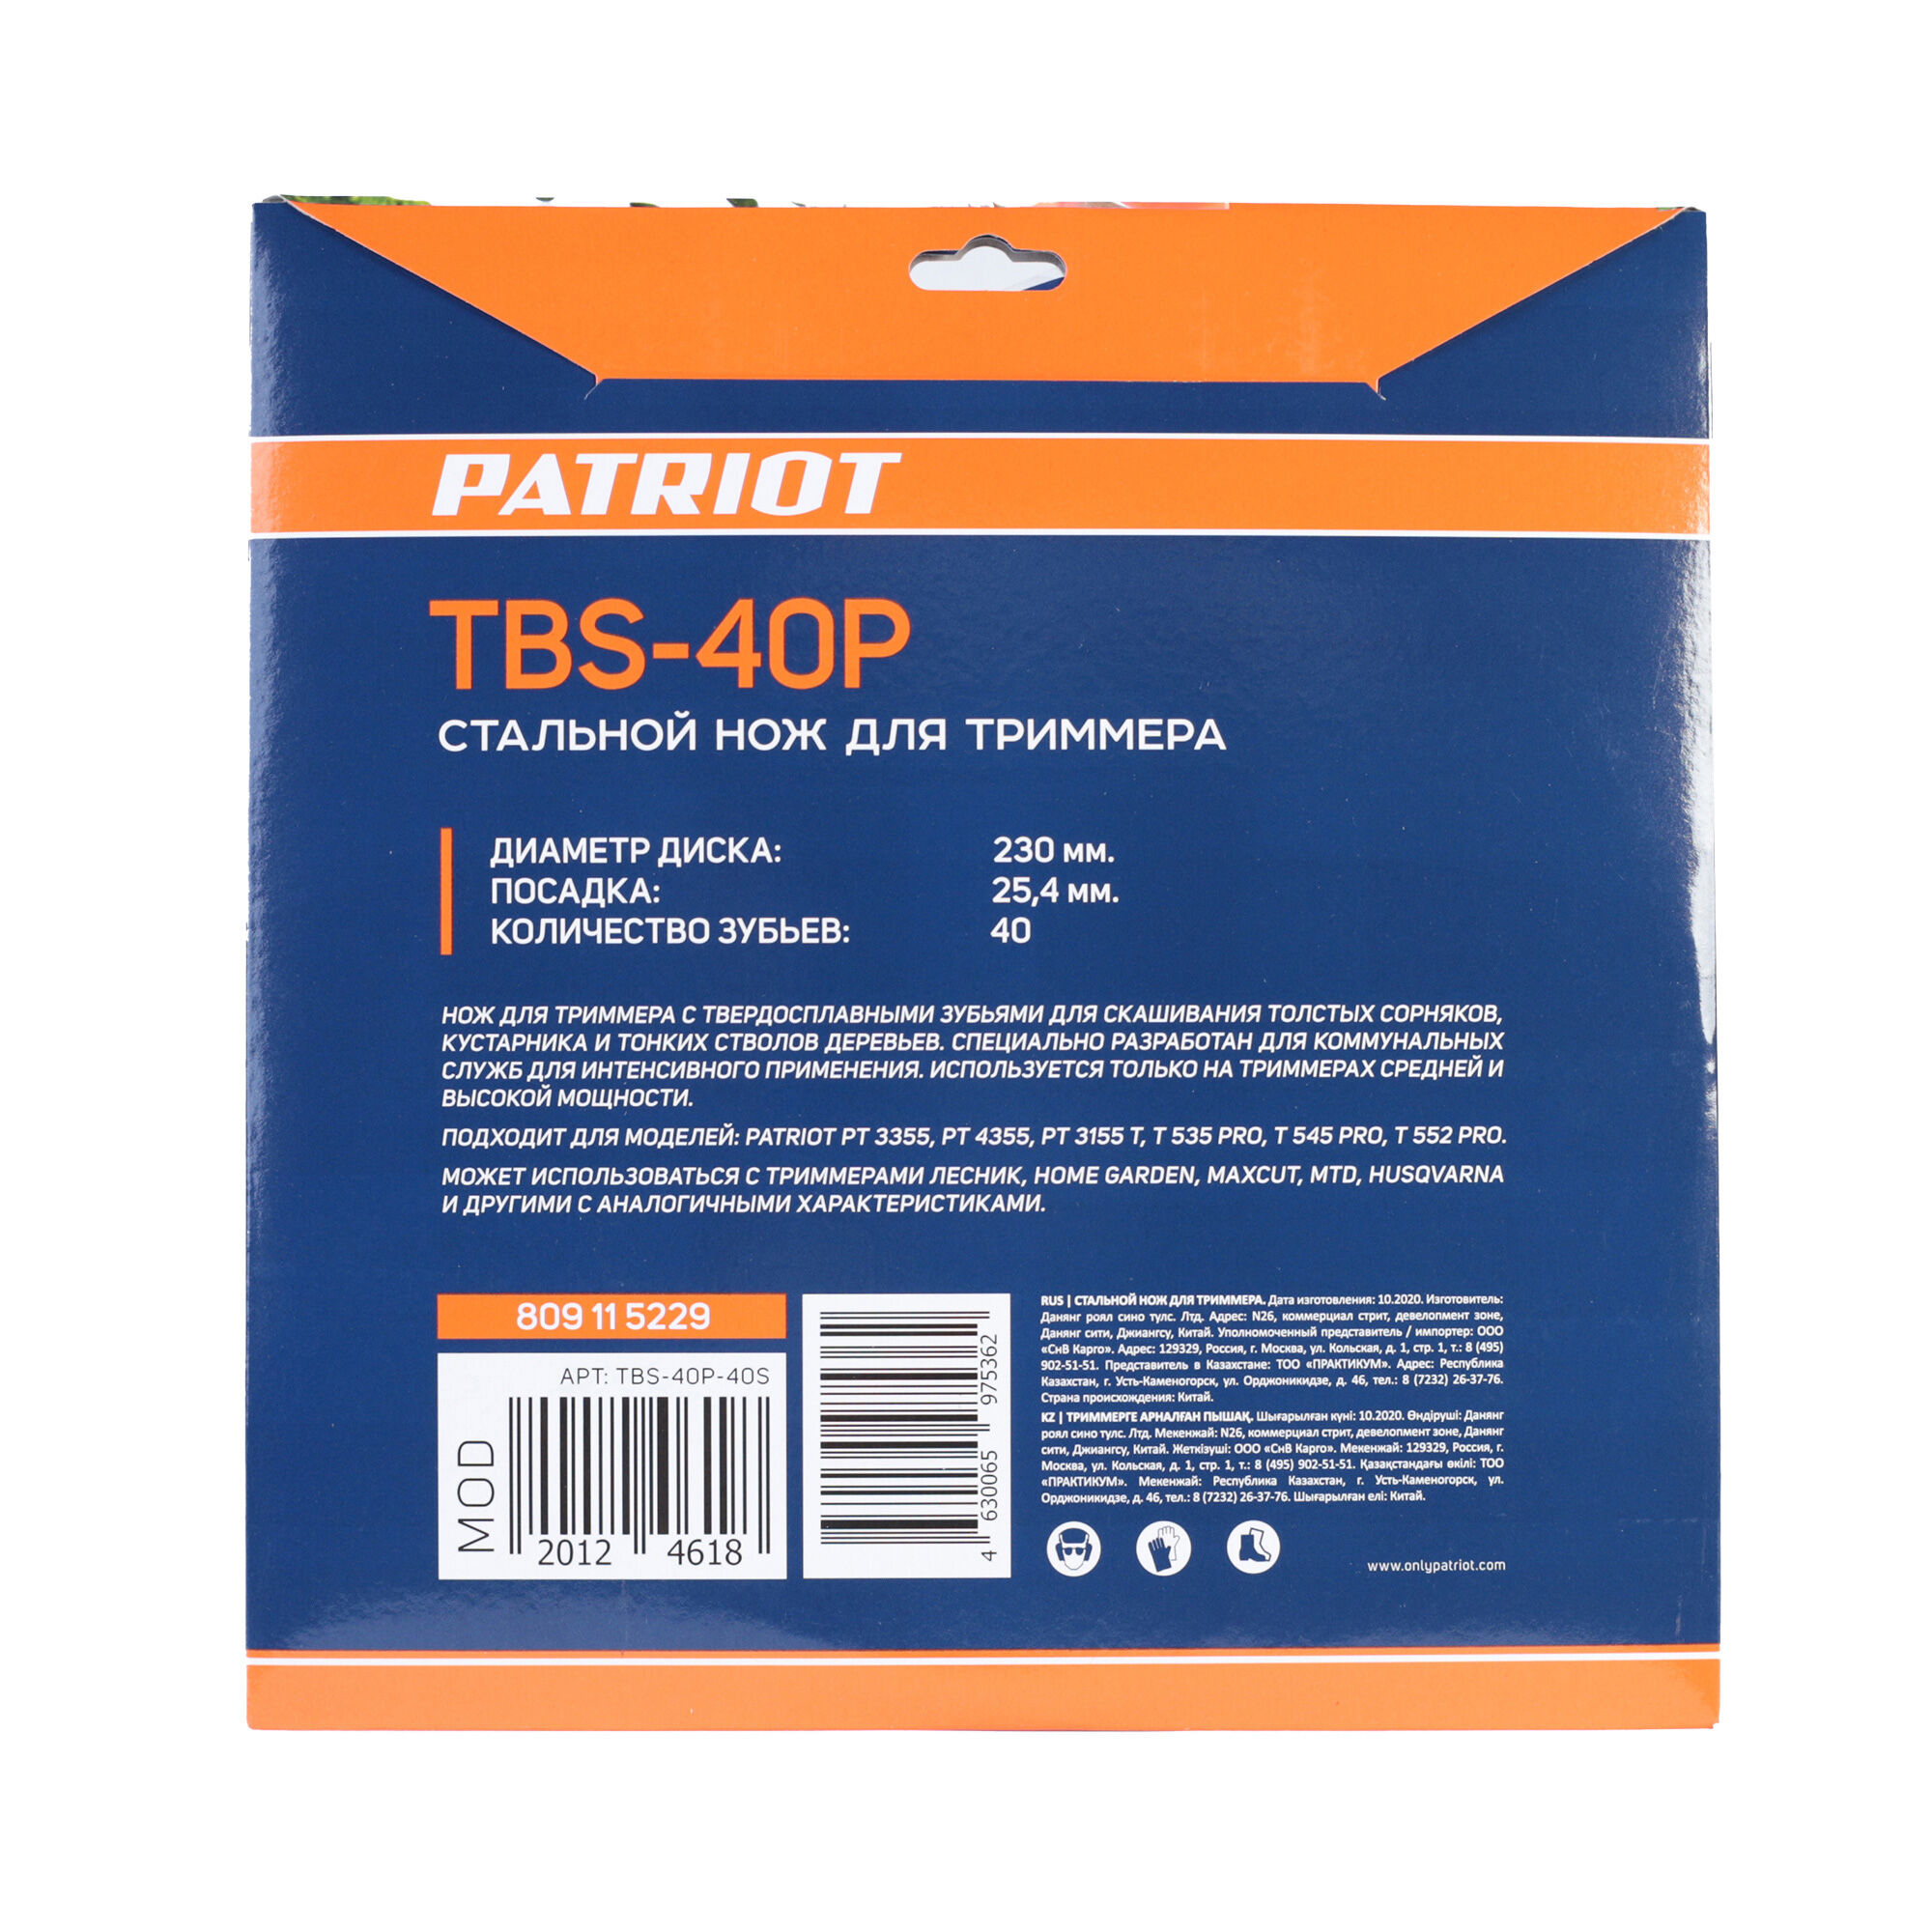 Нож PATRIOT TBS-40 P для триммера (230х25.4 мм, 40 зубьев) 4